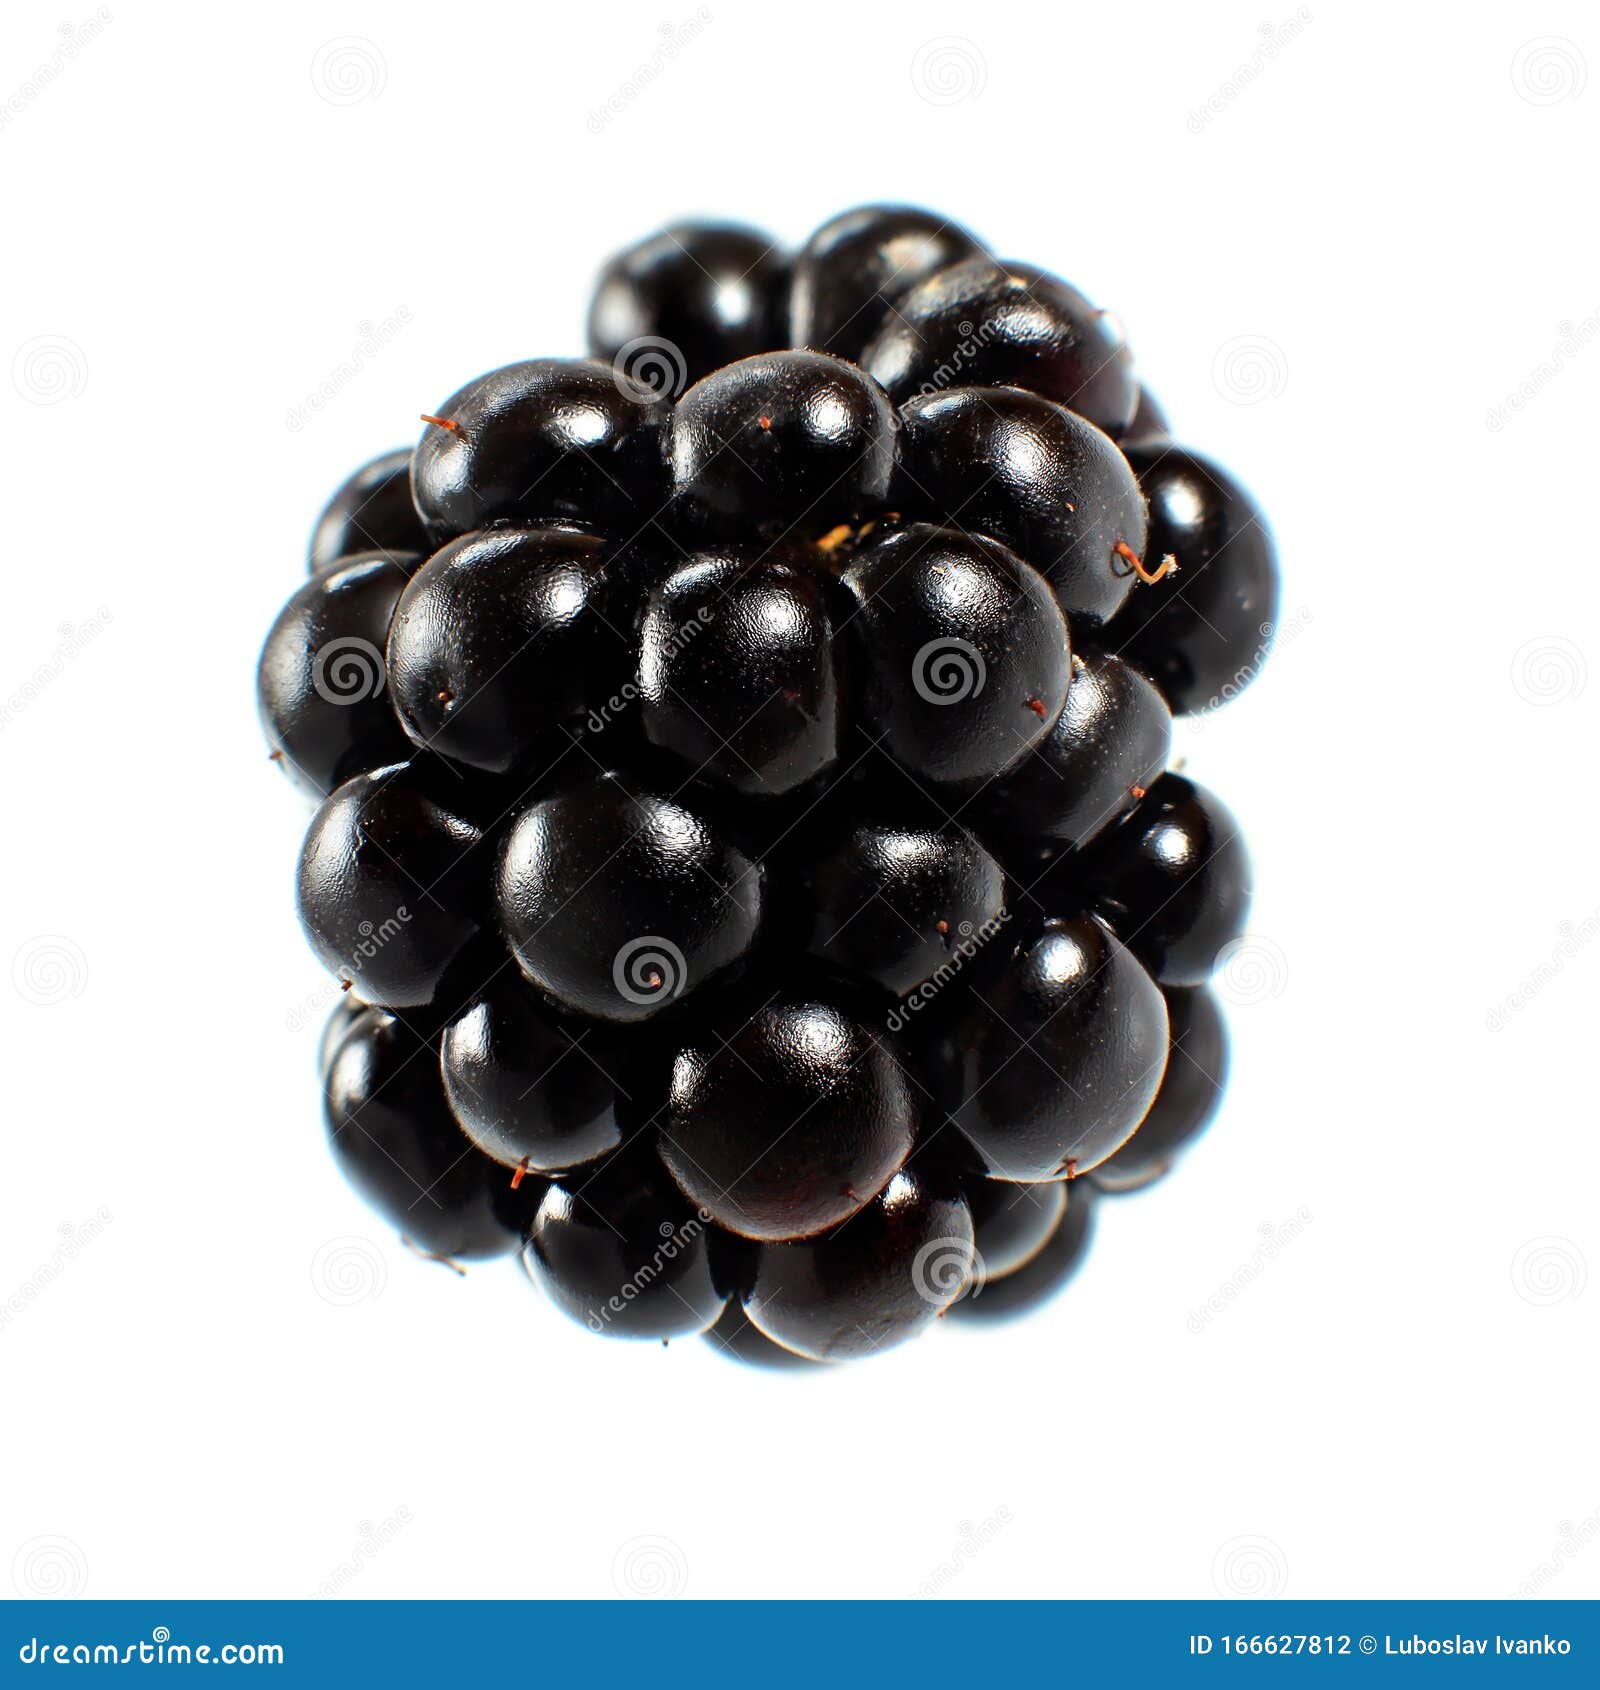 Blackberry Fruit Isolated on White Background Stock Photo - Image of ...